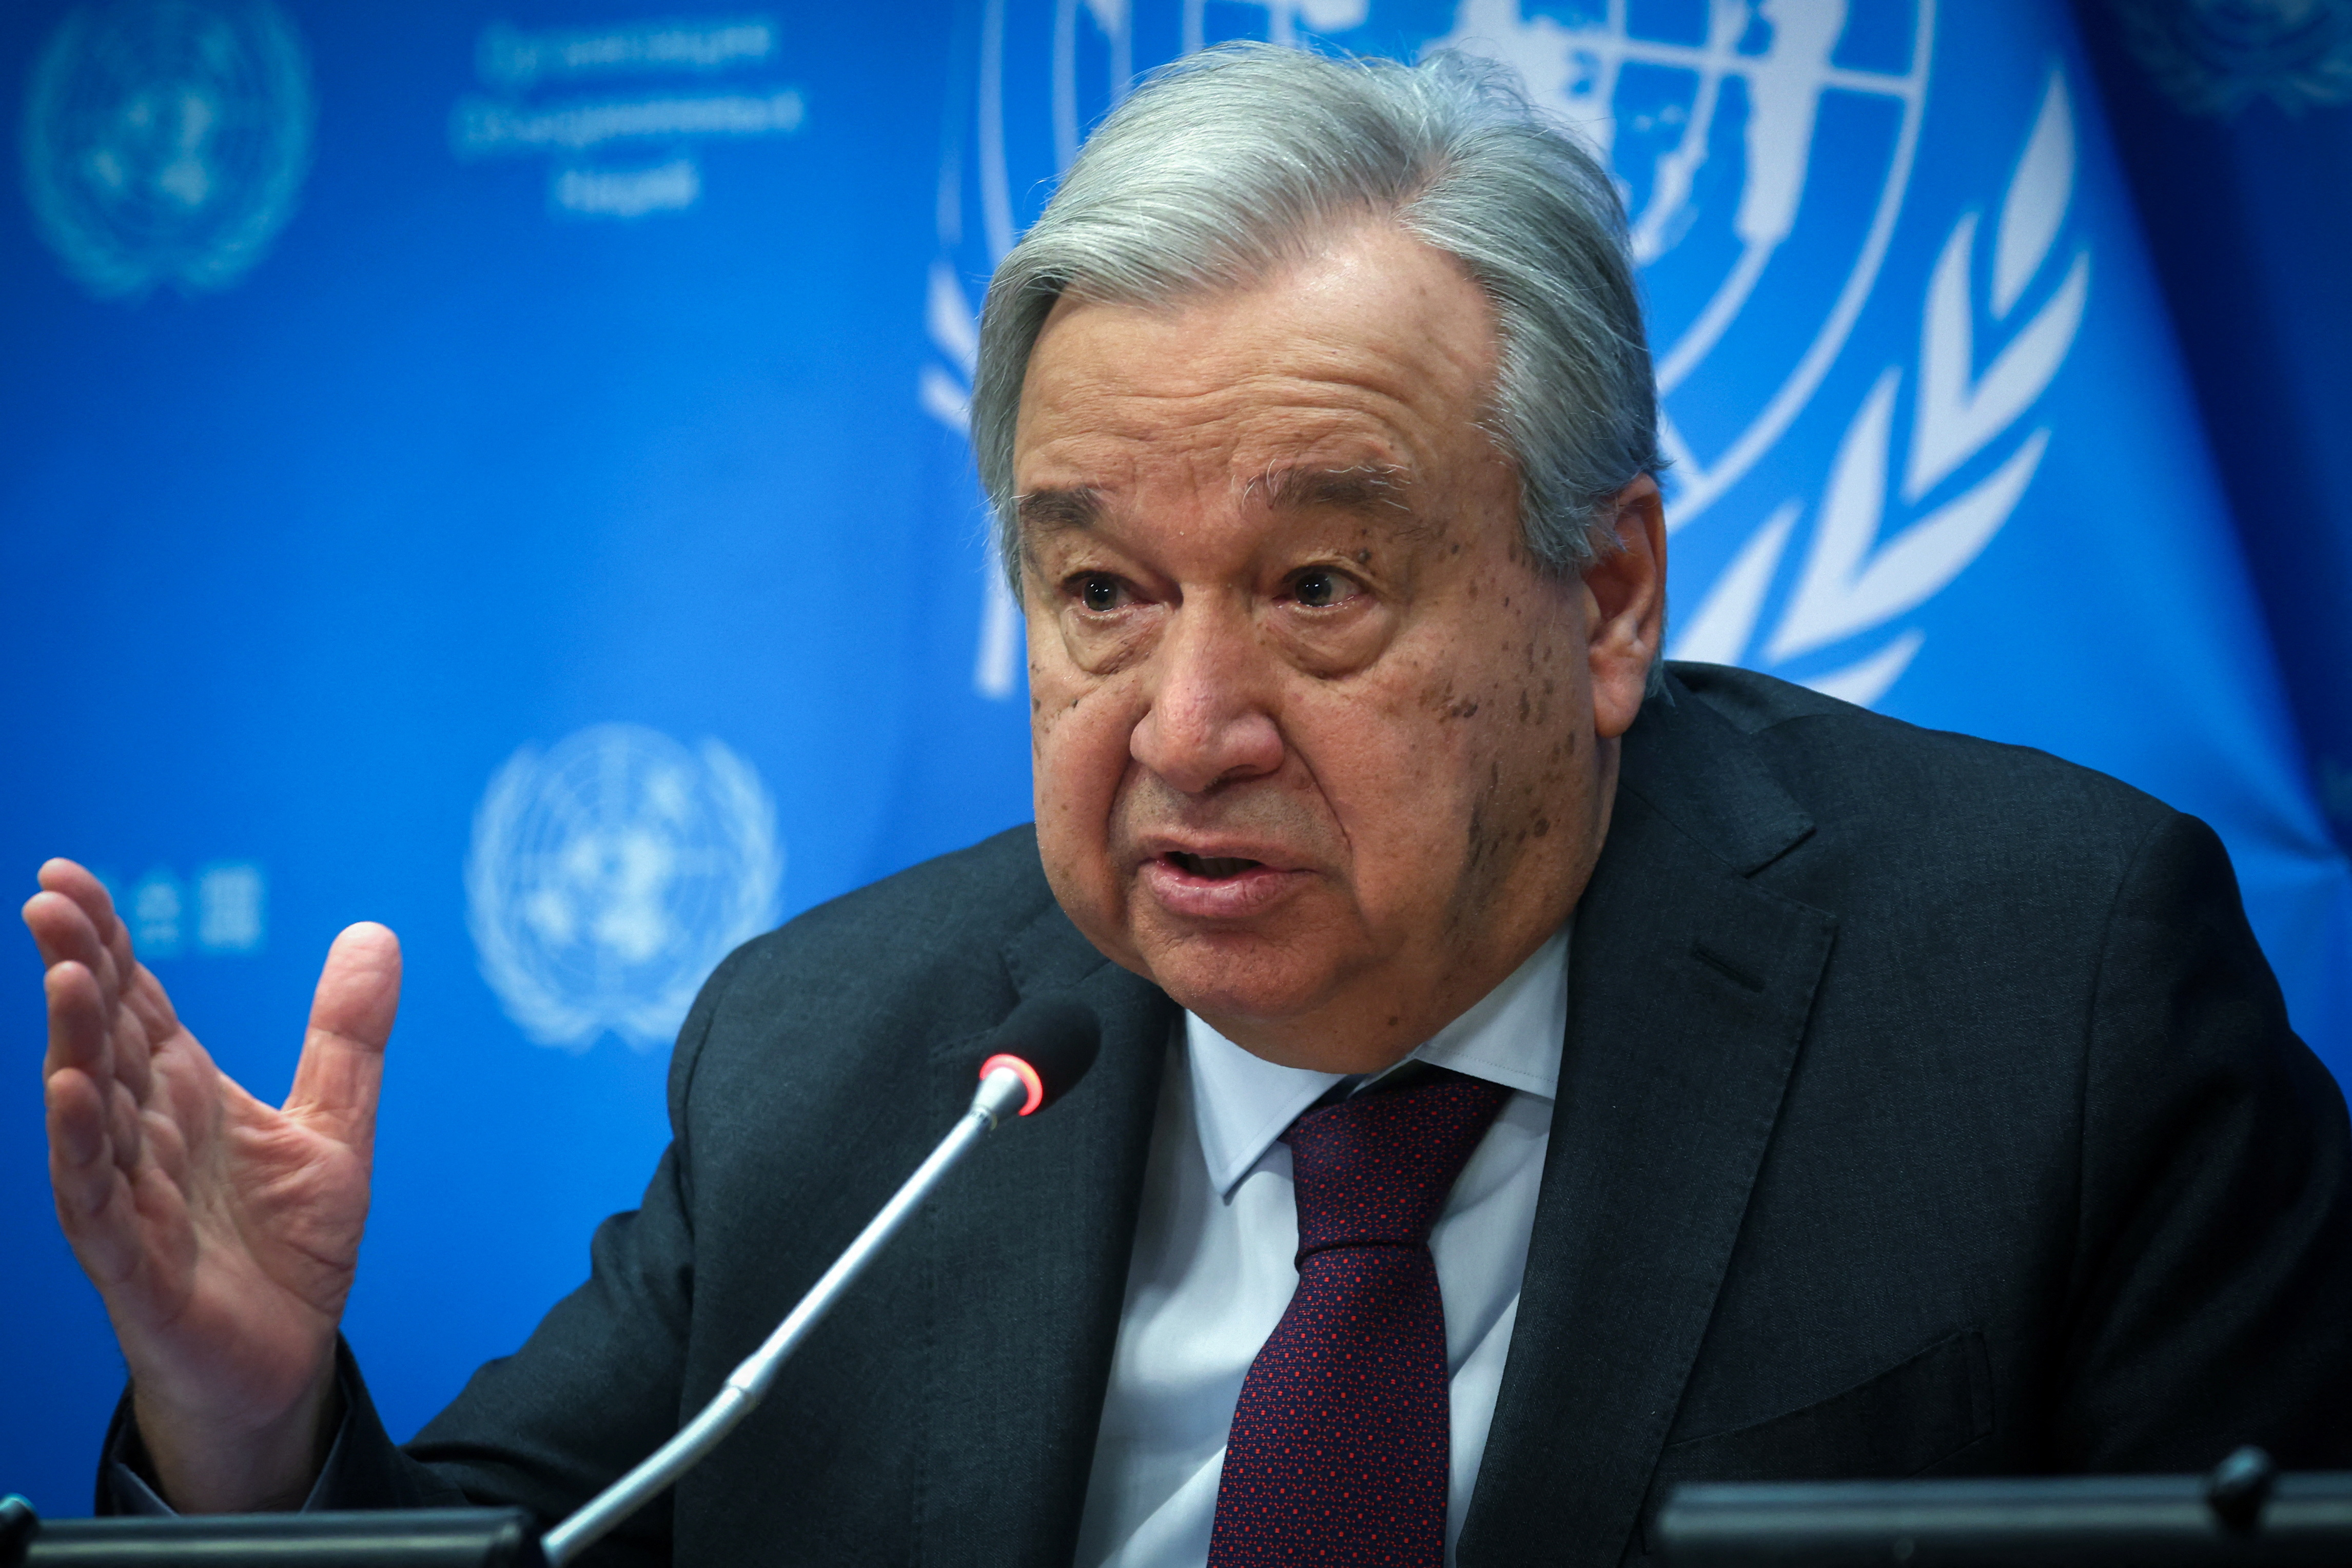 « Le monde échoue à atteindre ses objectifs de développement », Antonio Guterres (ONU)